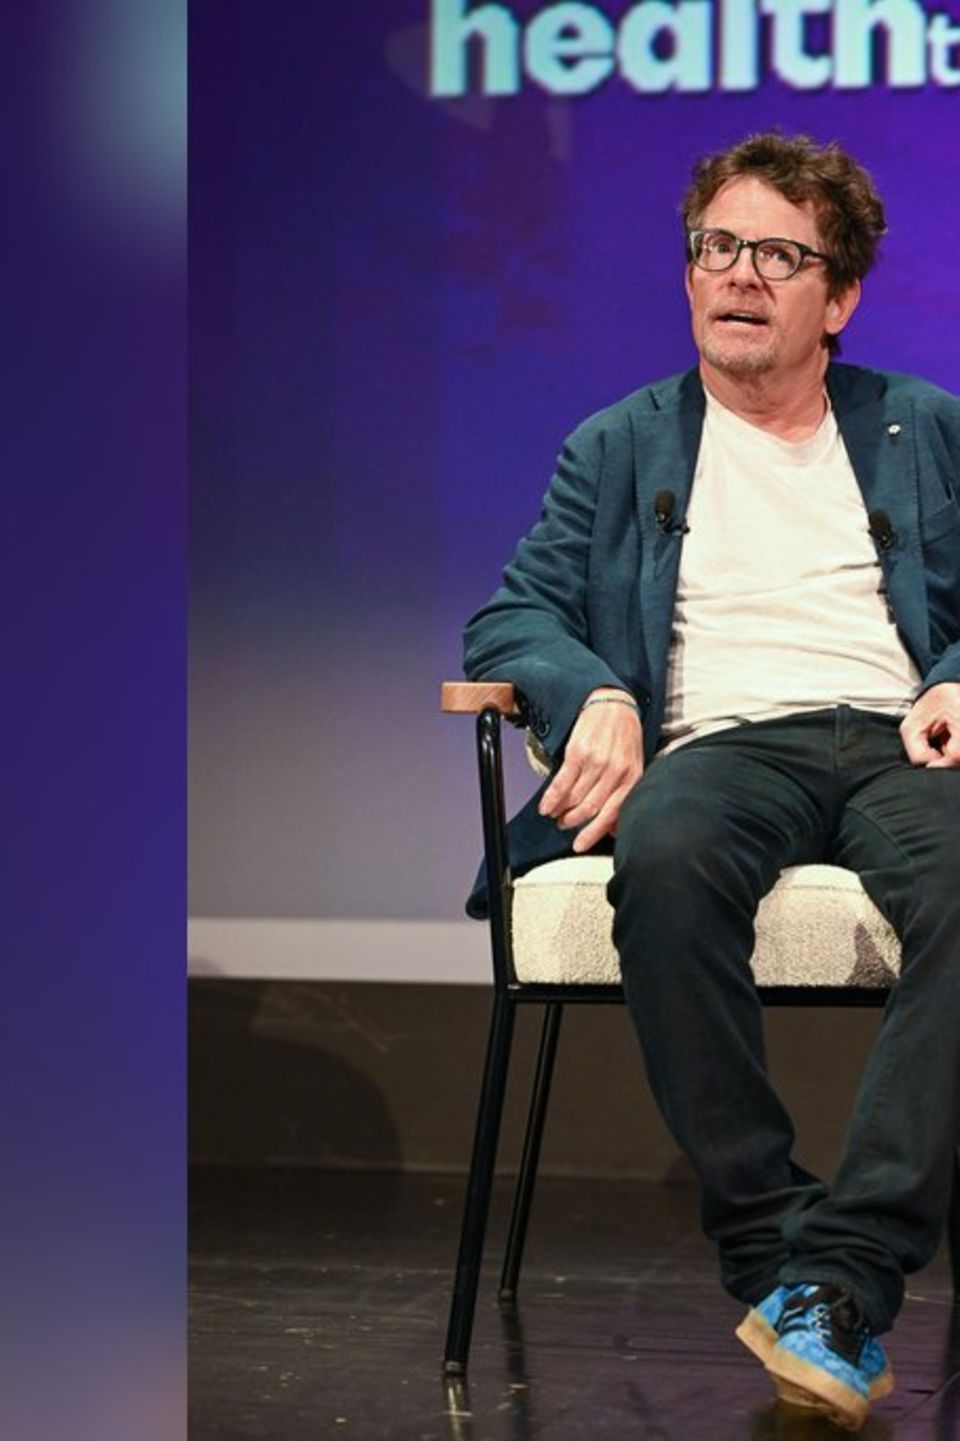 Michael J. Fox spricht mit inspirierenden Worten über seinen Kampf gegen Parkinson.